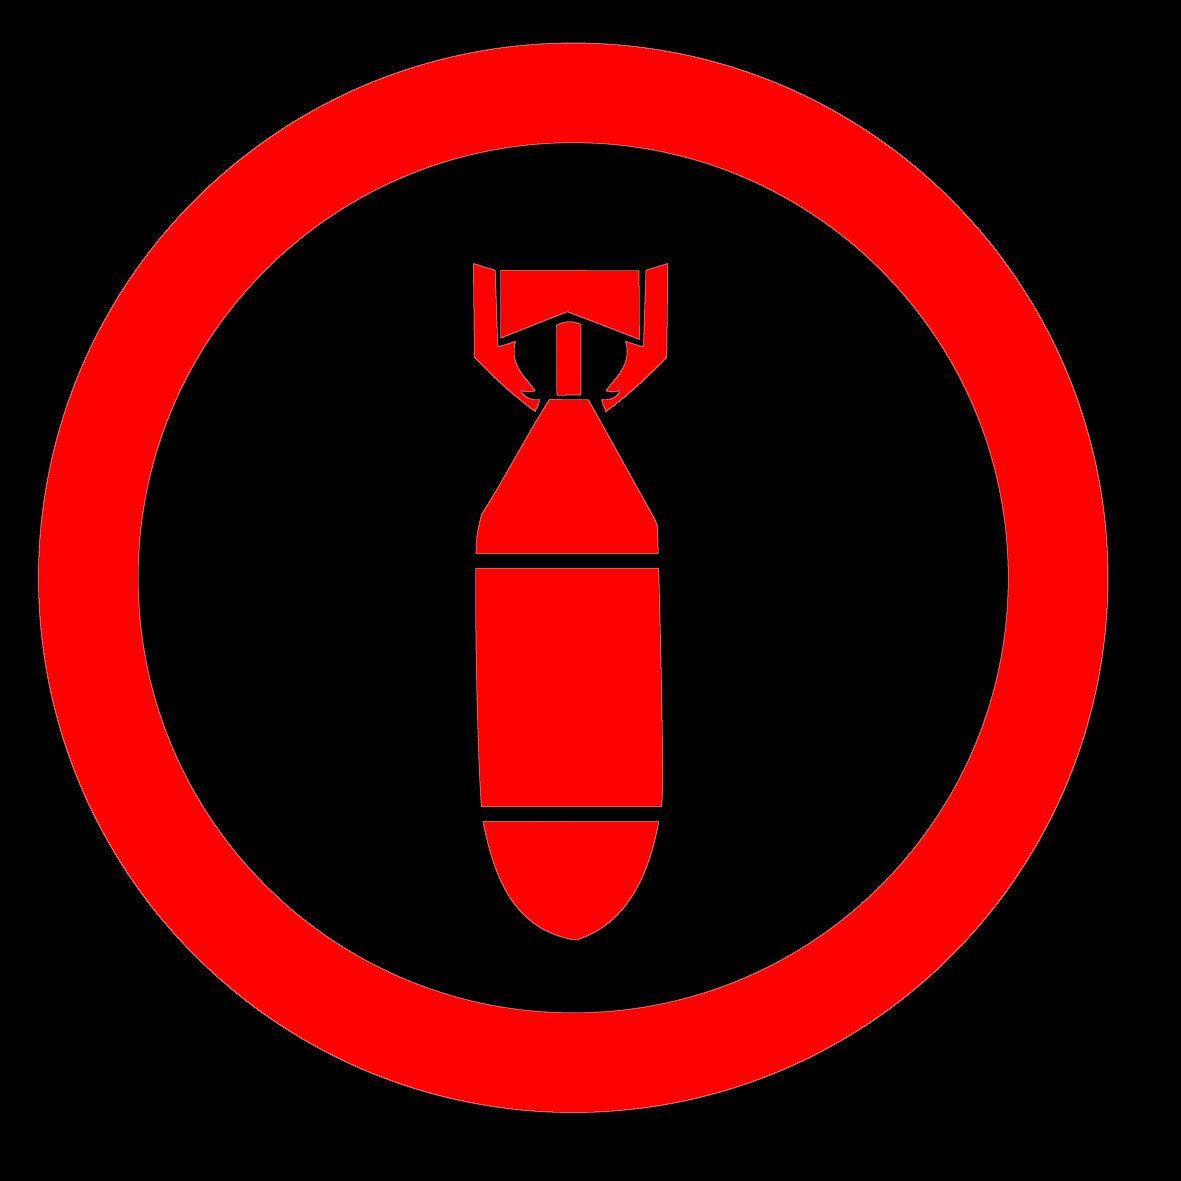 Red Archer Logo - 21 41